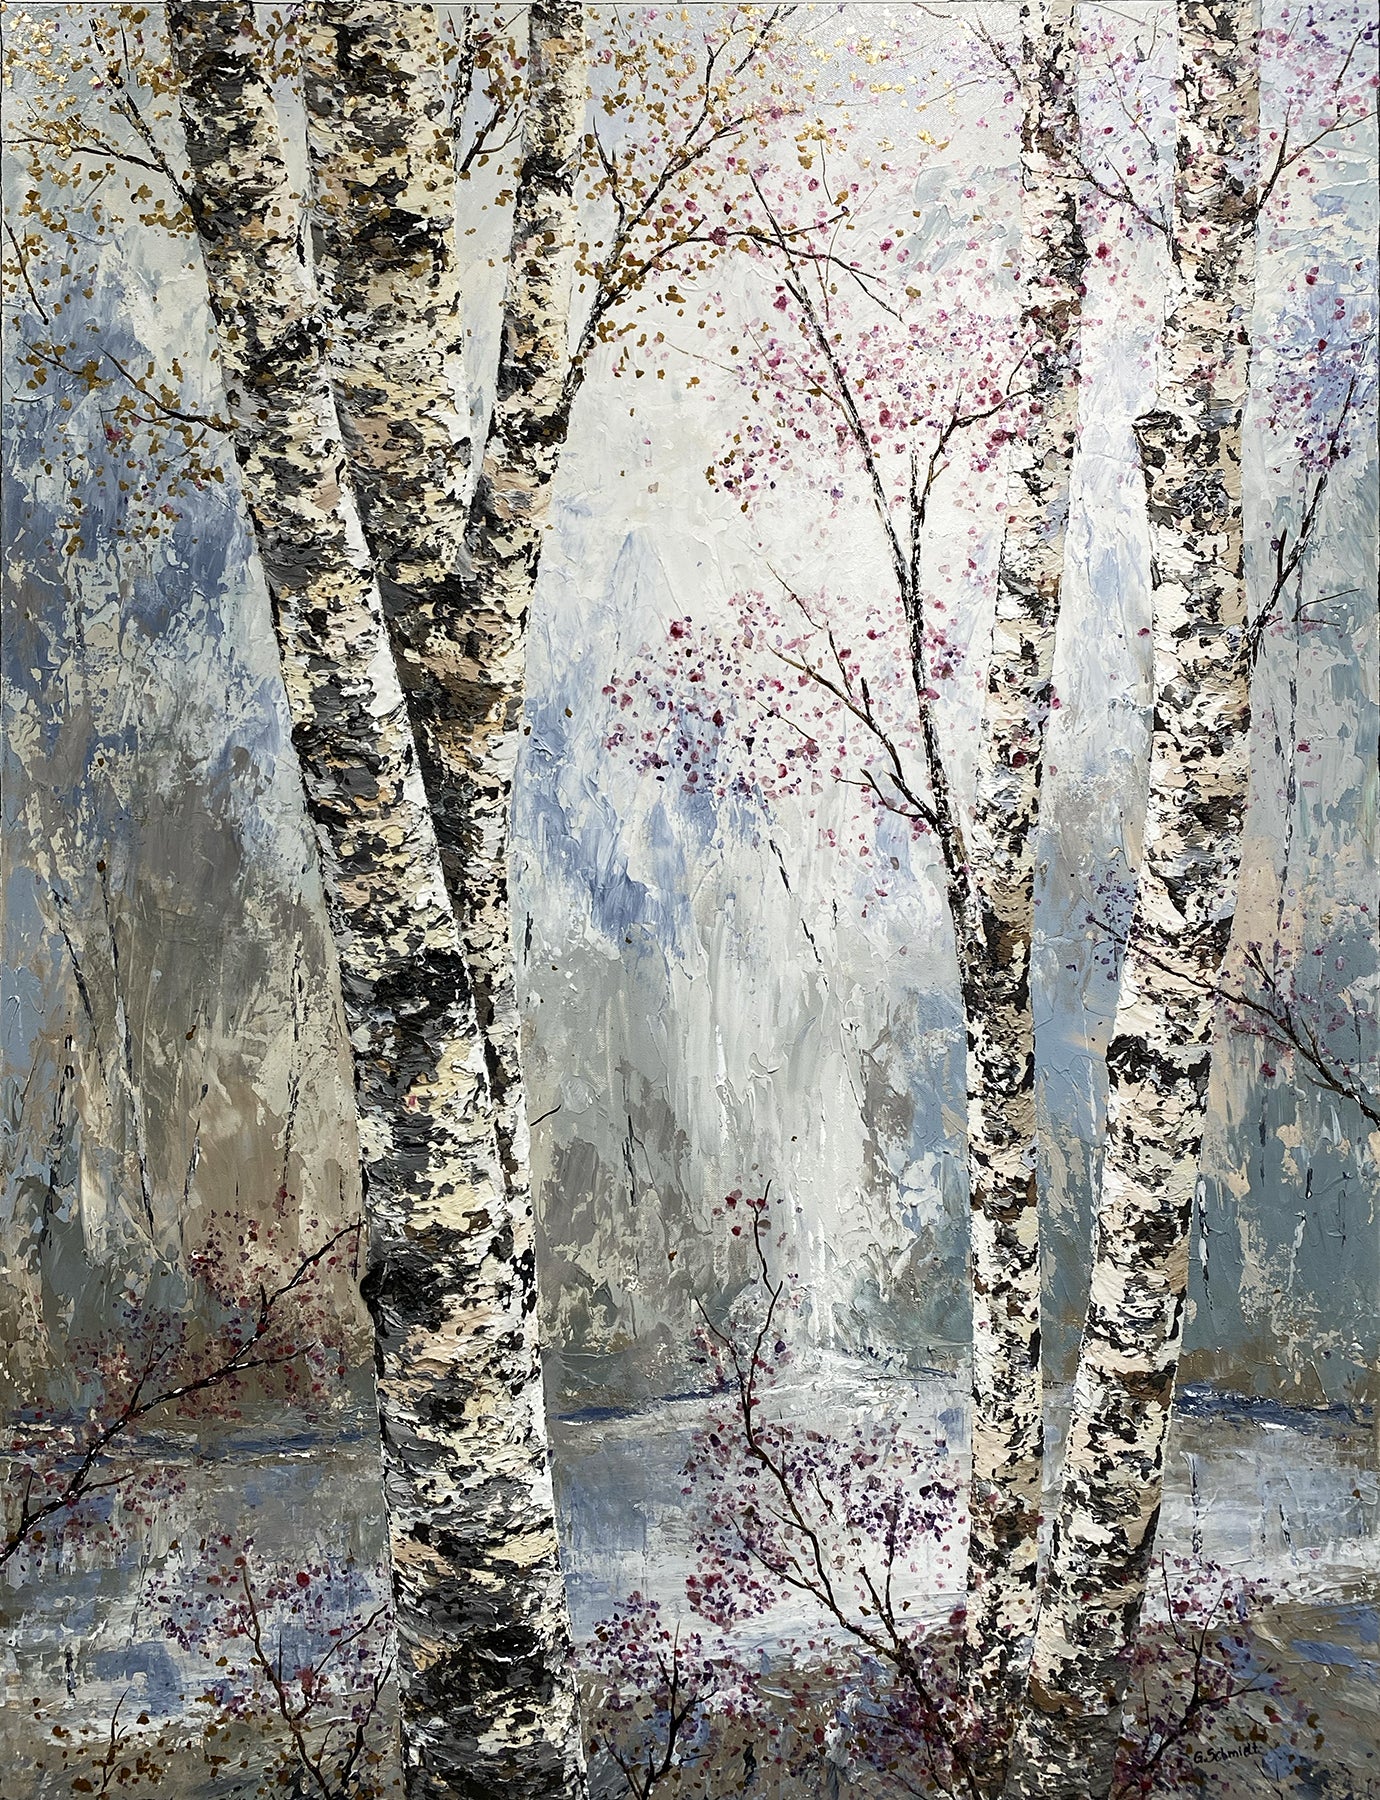 After the Rain.  Morning has Broken. A birch tree painting by Michigan artist Gerd Schmidt.